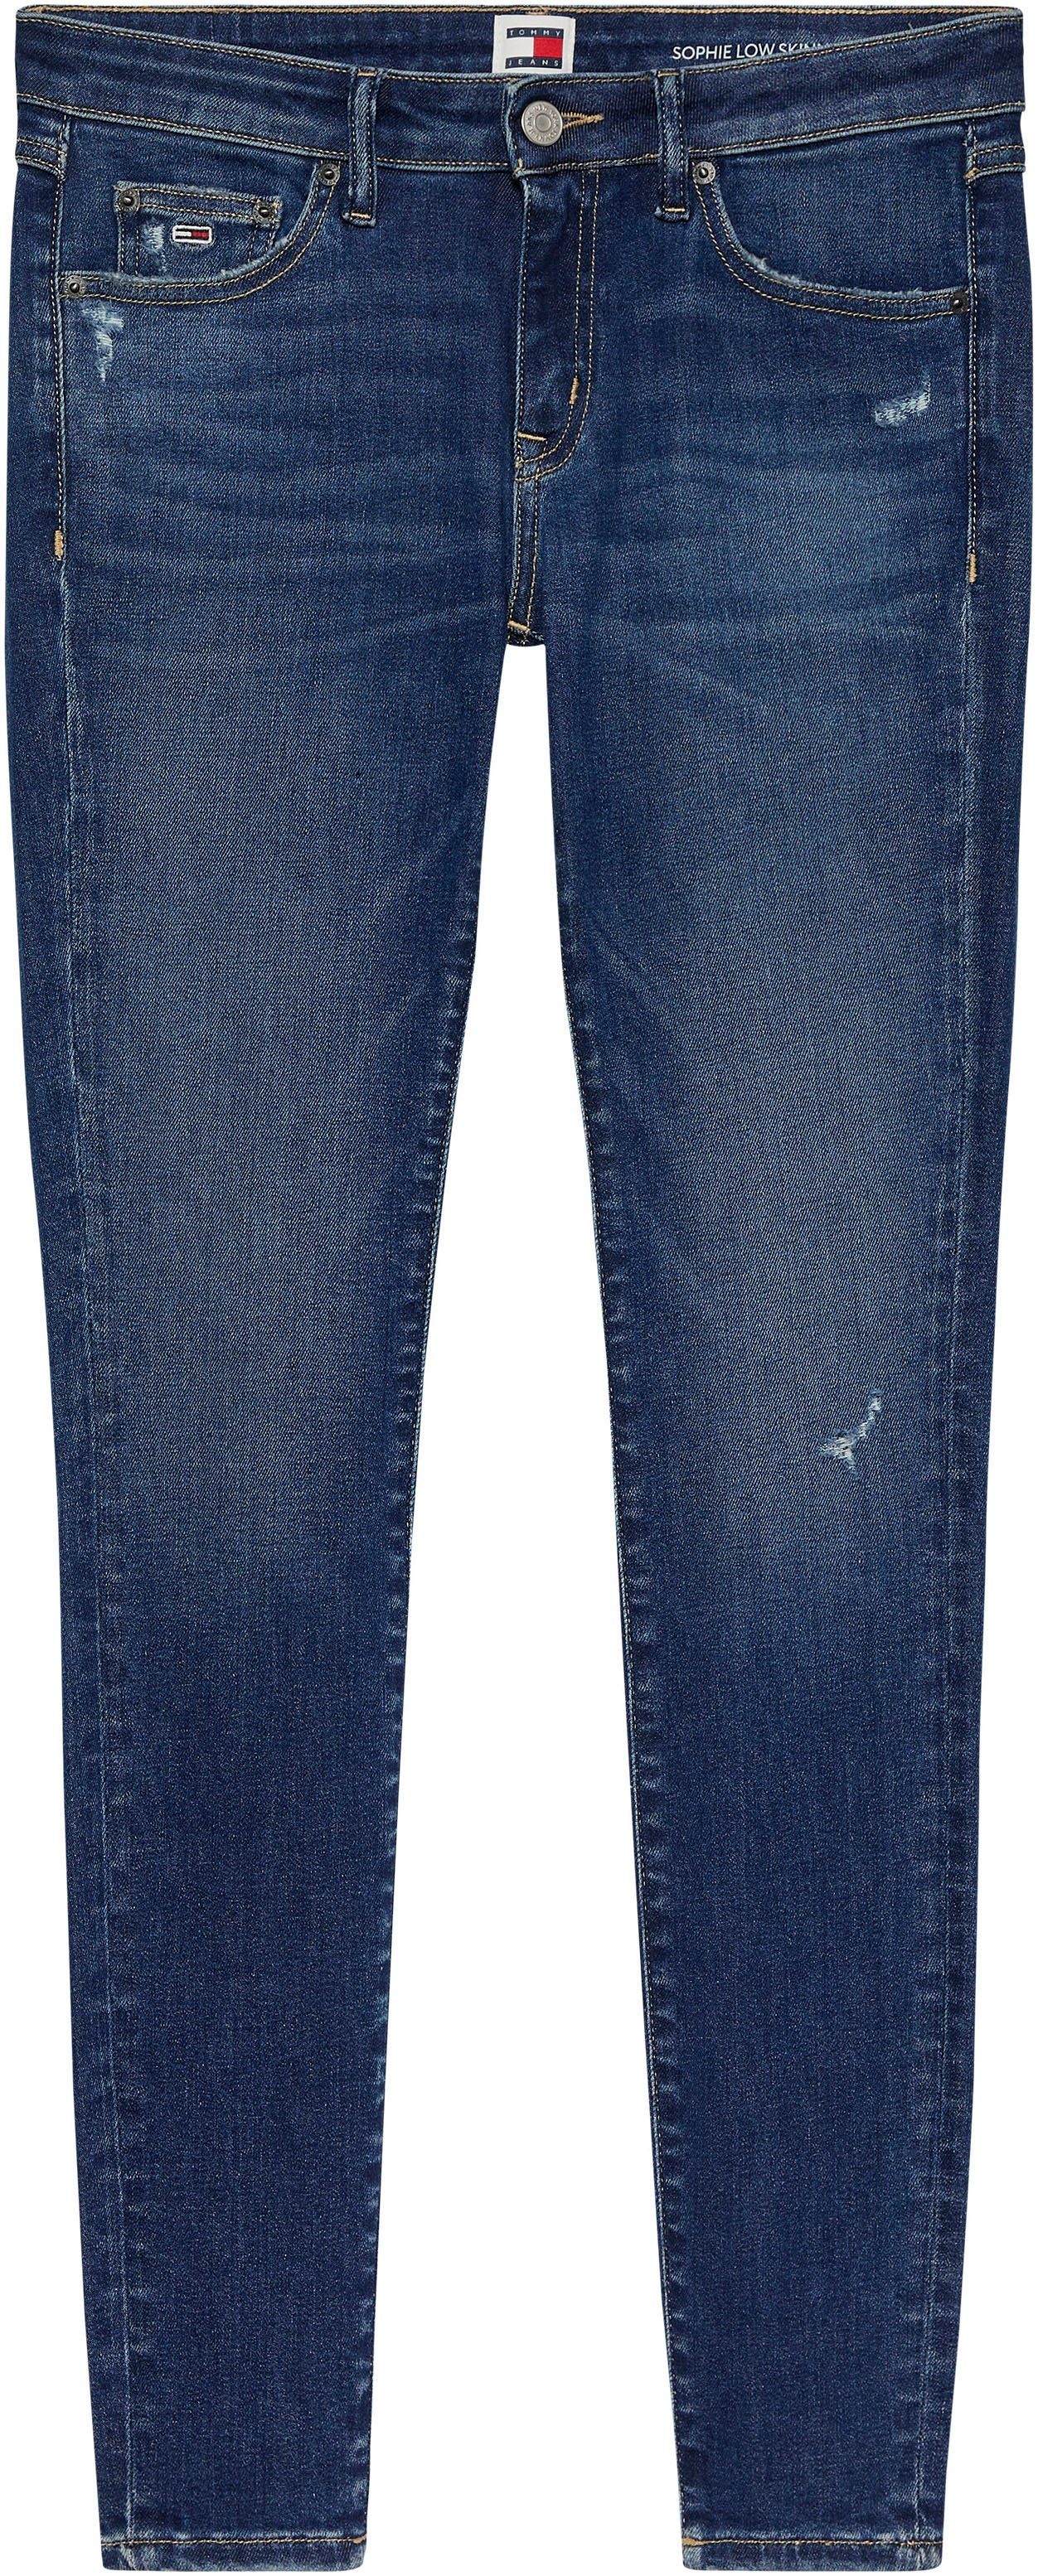 TOMMY JEANS Skinny fit jeans LW SKN AH2236 met merklabel & badge